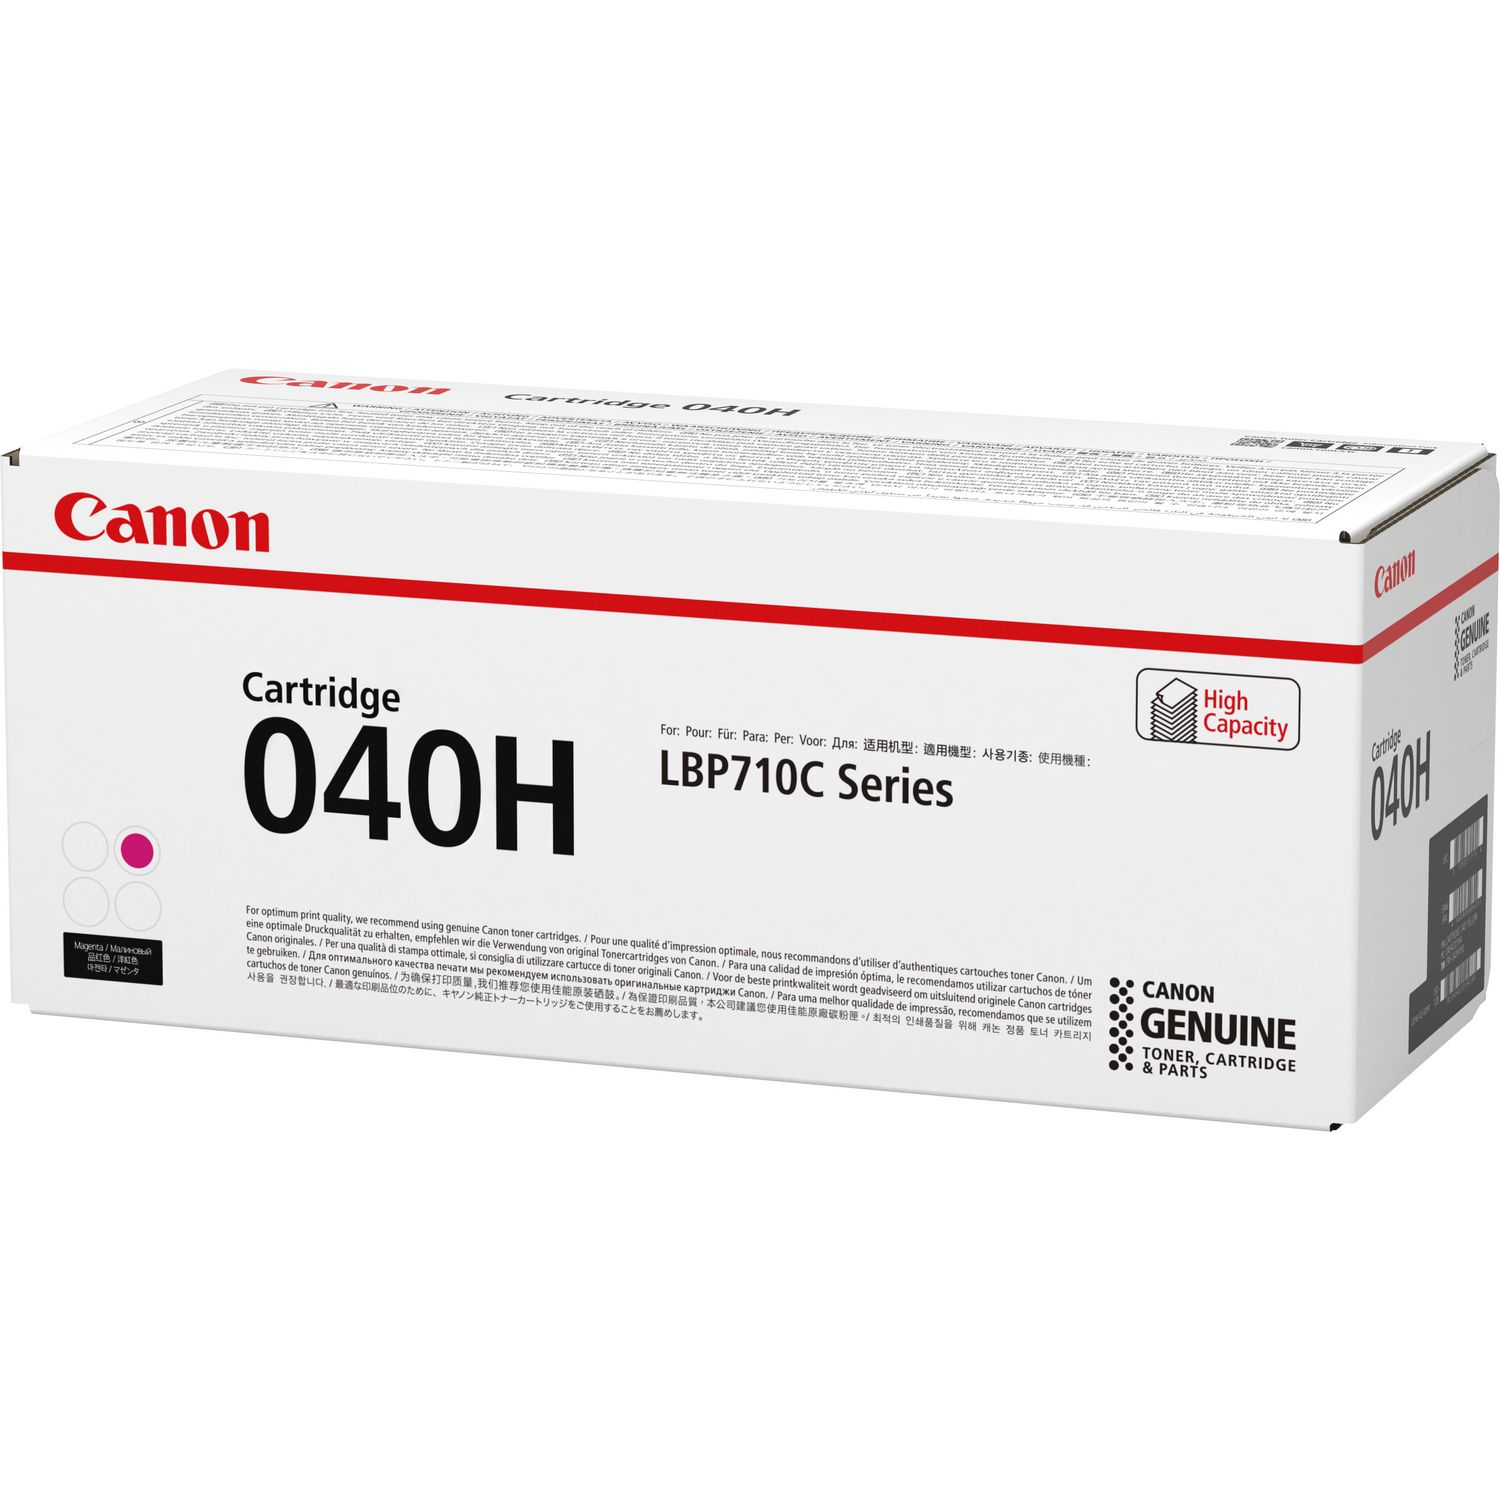 Canon 040 H - Mit hoher Kapazität - Magenta - Original